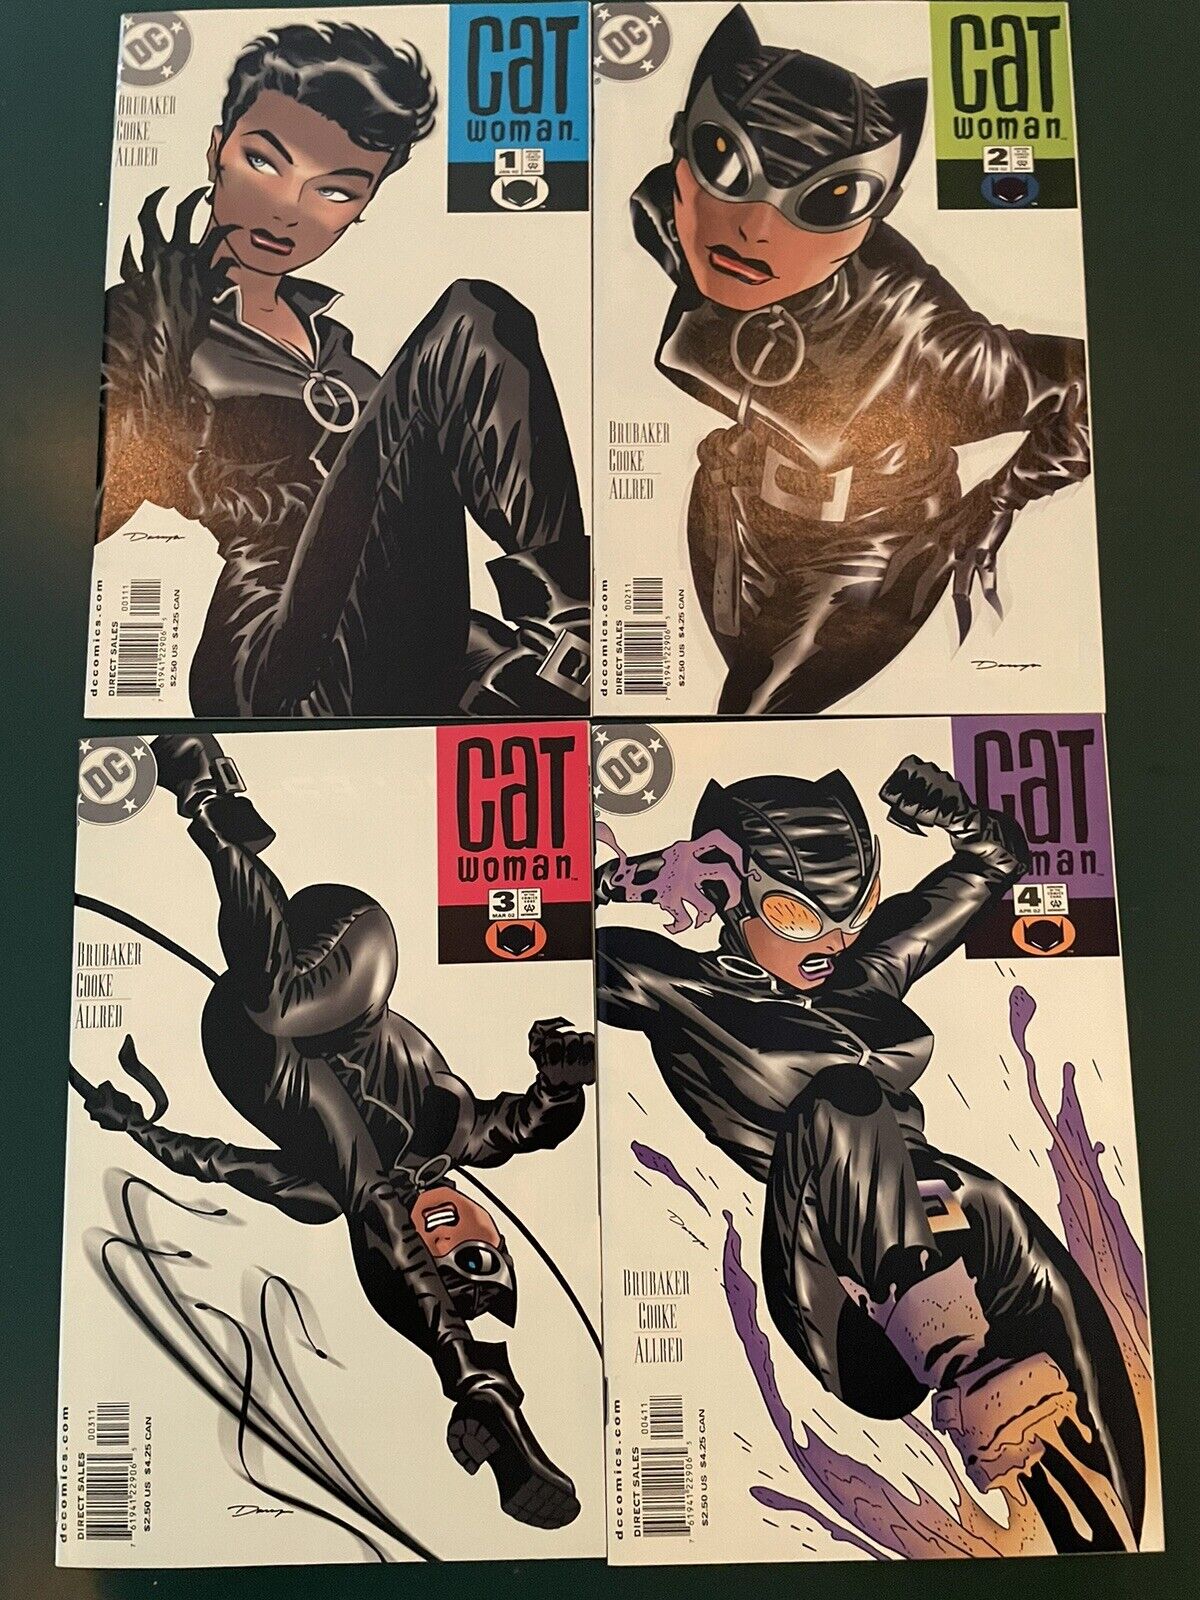 Catwoman Vol 3 1-21 + Secret Files #1 Comic Book Lot DC Comics NM 2002-04 Cooke